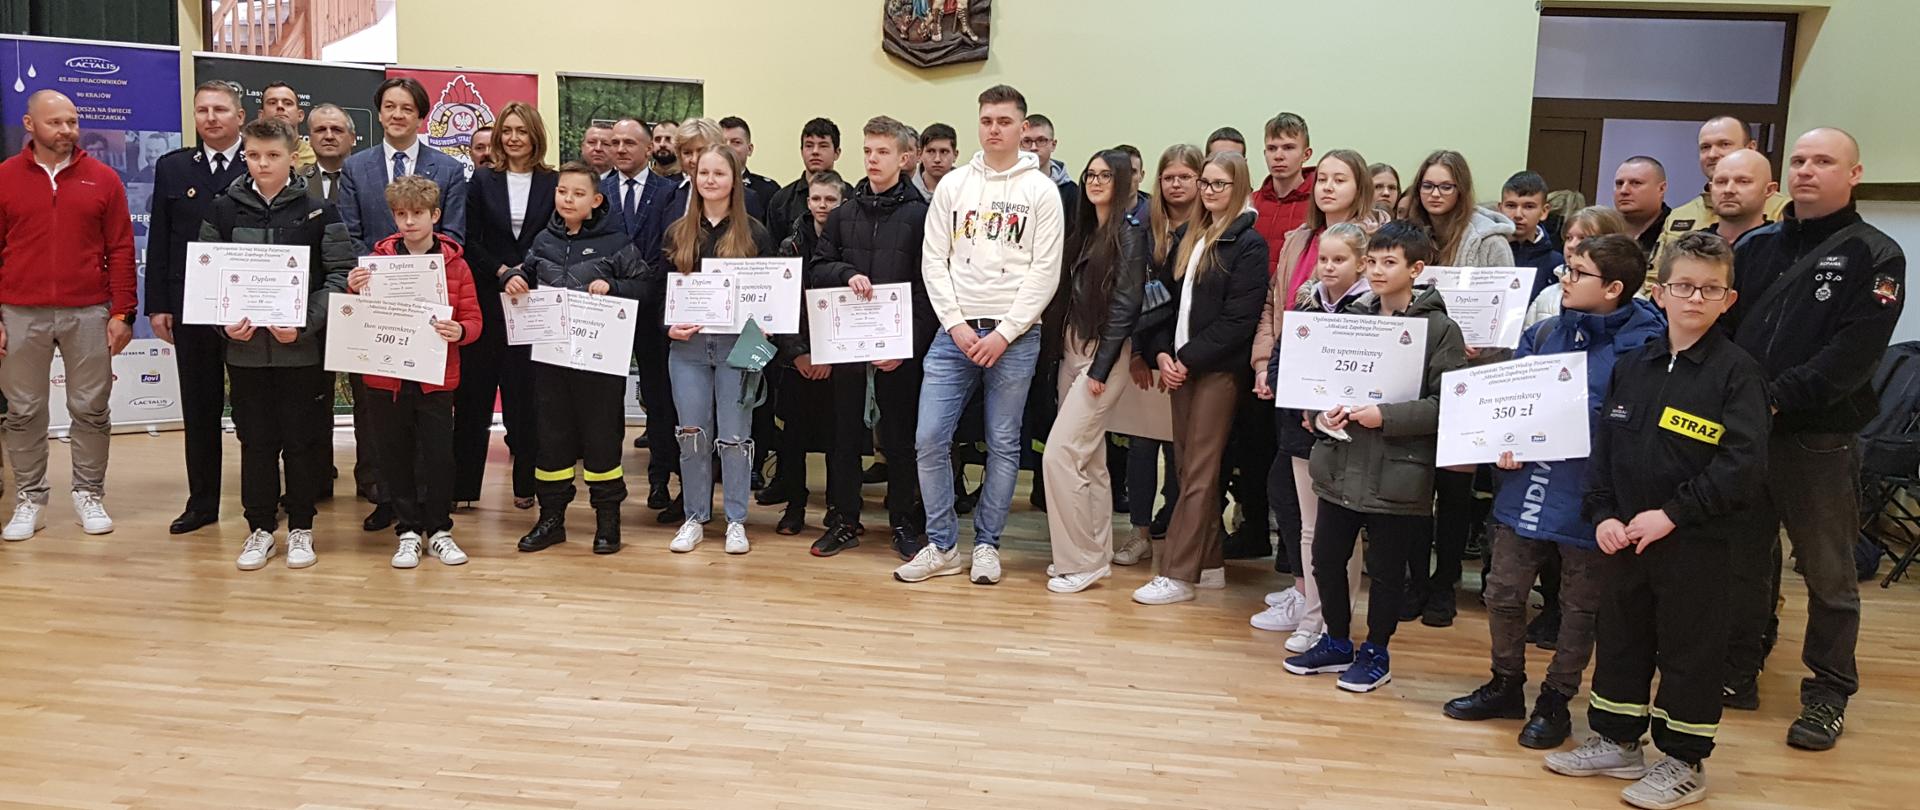 uczestnicy Eliminacji powiatowych Ogólnopolskiego Turnieju Wiedzy Pożarniczej “Młodzież Zapobiega Pożarom” na sali gimnastycznej